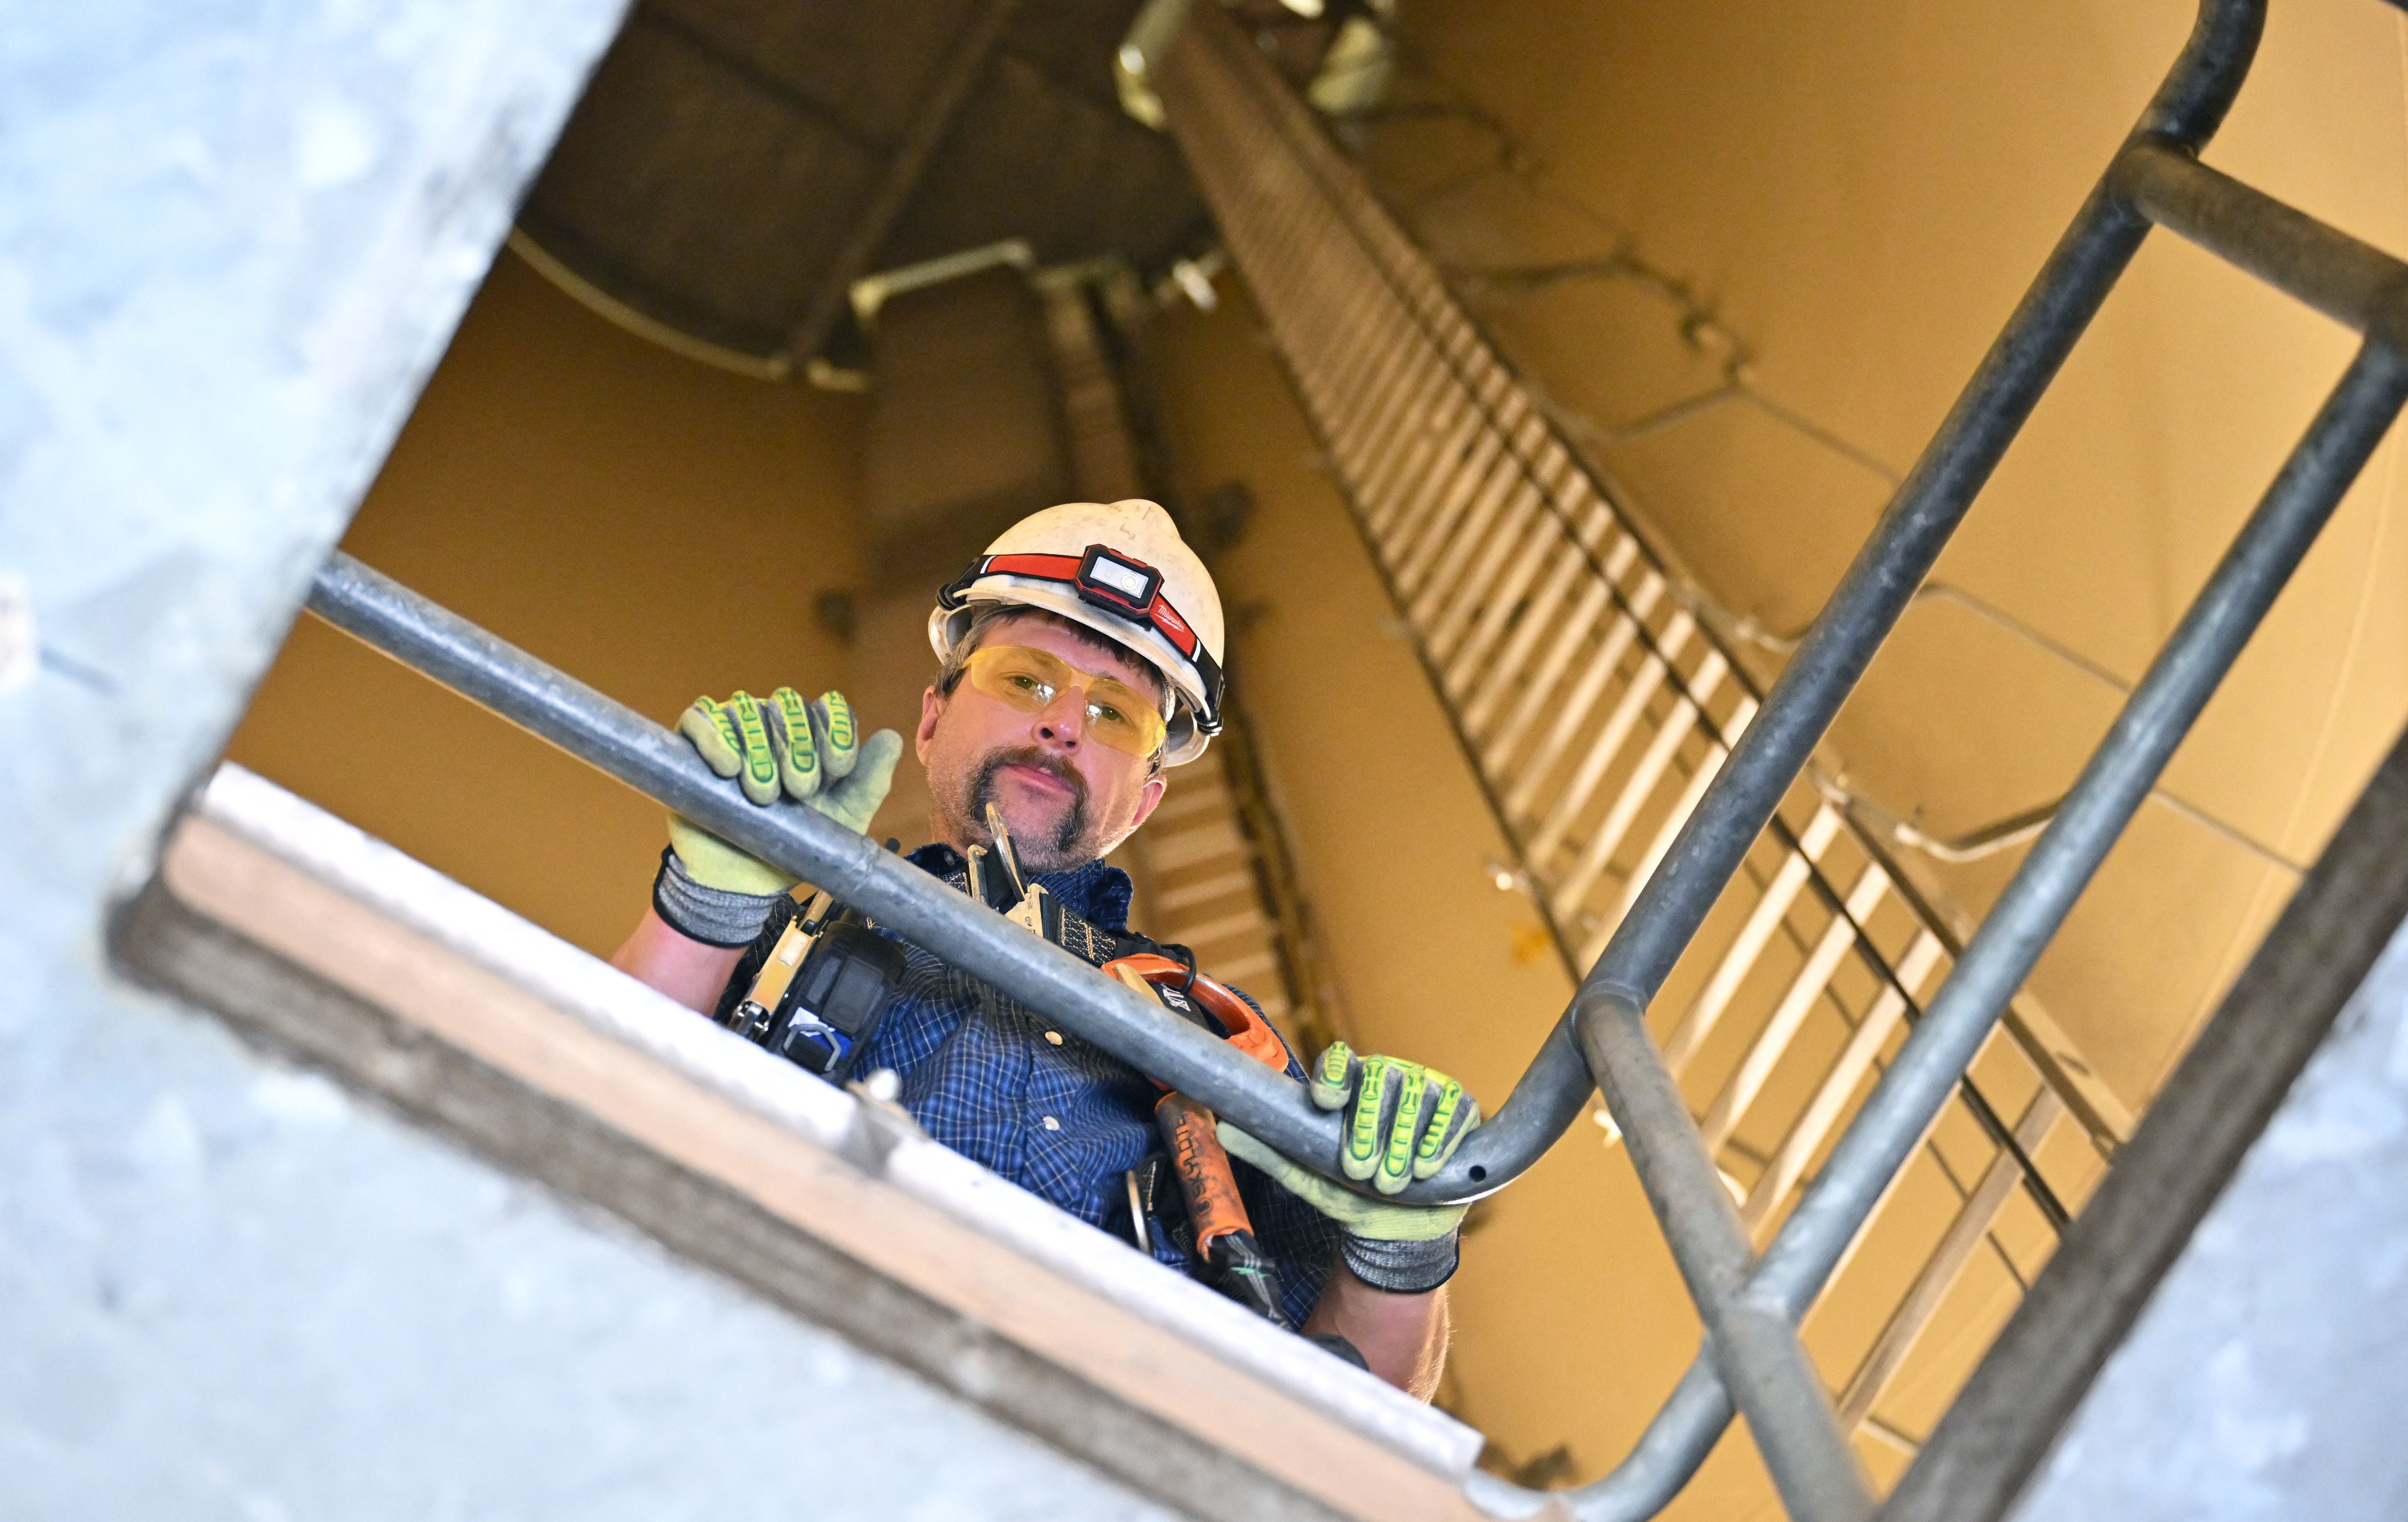 Terrill Stowe, técnico de turbinas eólicas, posa antes de subir a la cima de la turbina eólica en el campus de Mesalands Community College en Tucumcari, Nuevo México. Fotografía: